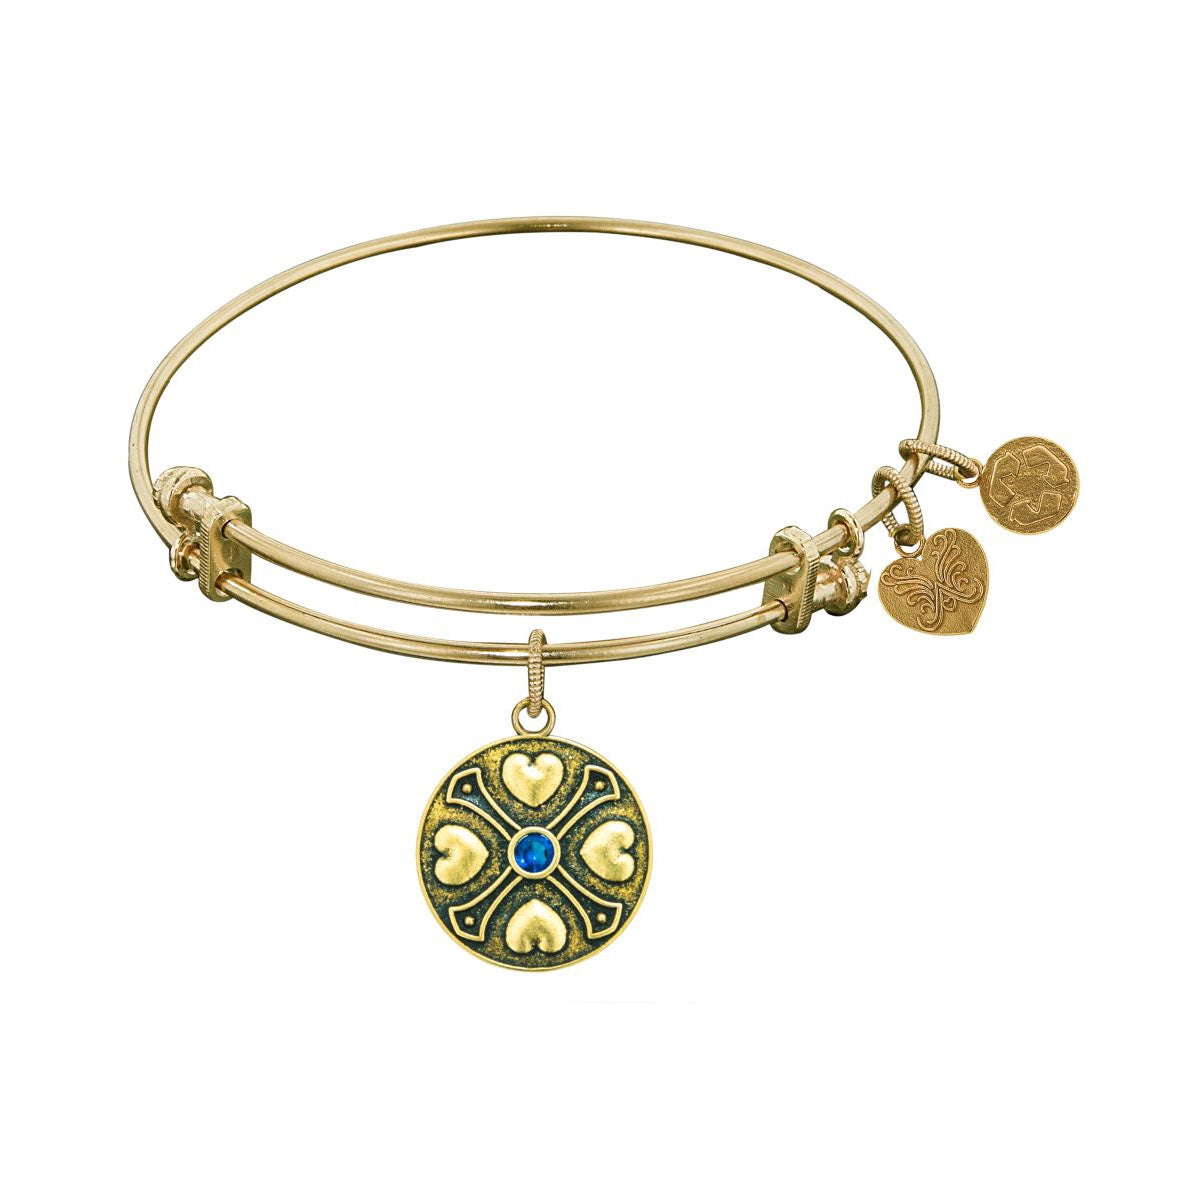 Finish Brass September Birthstone Angelica Bangle Bracelet, 7.25" fine designer jewelry for men and women